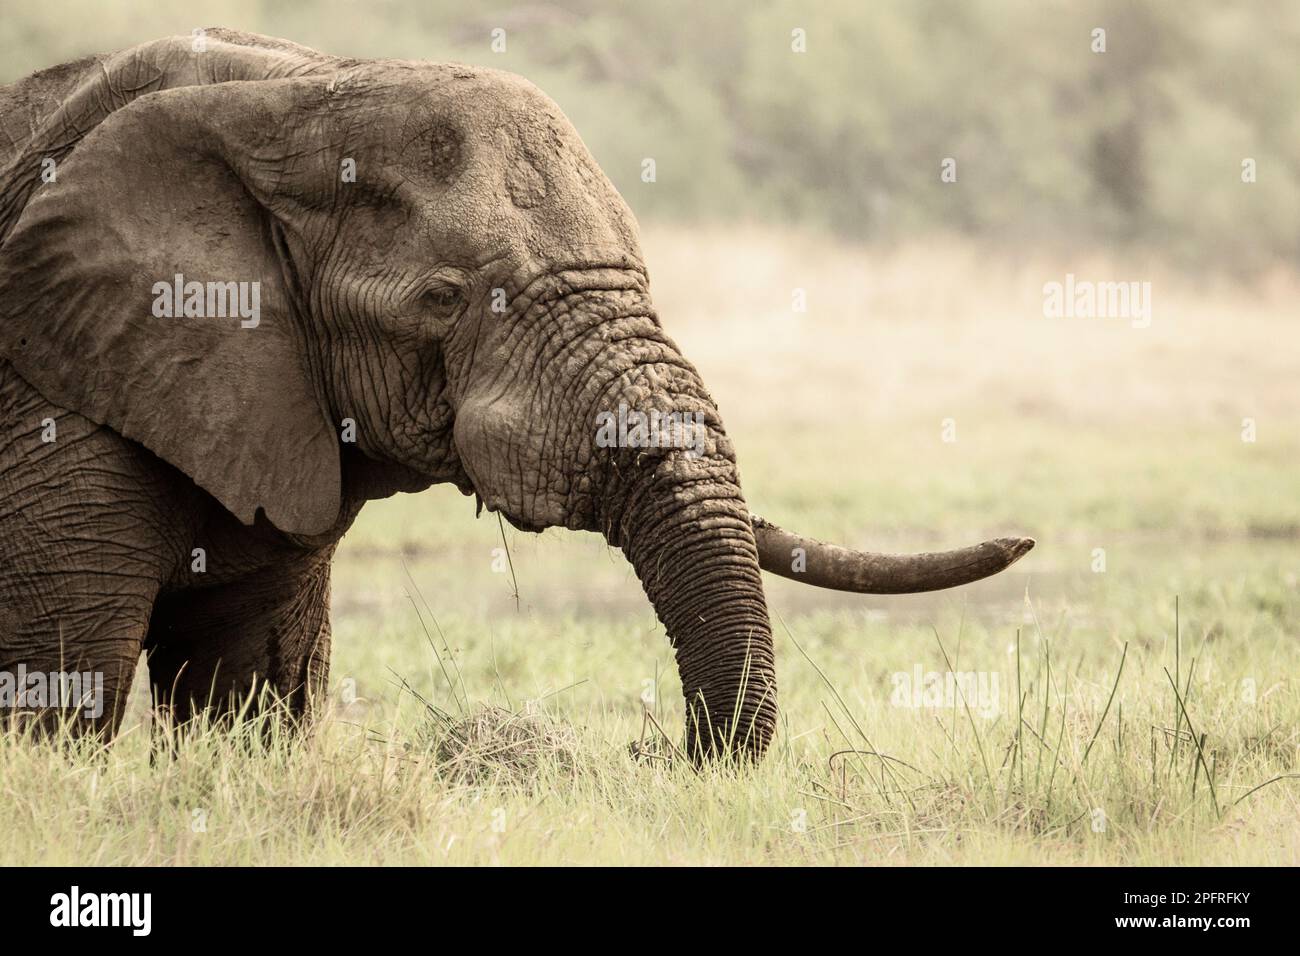 Einsamer Elefantenbulle, Loxodonta africana, Porträt seines 1. Stoßzahns, Stamm und Gesicht. Okavango Delta, Botsuana, Afrika Stockfoto